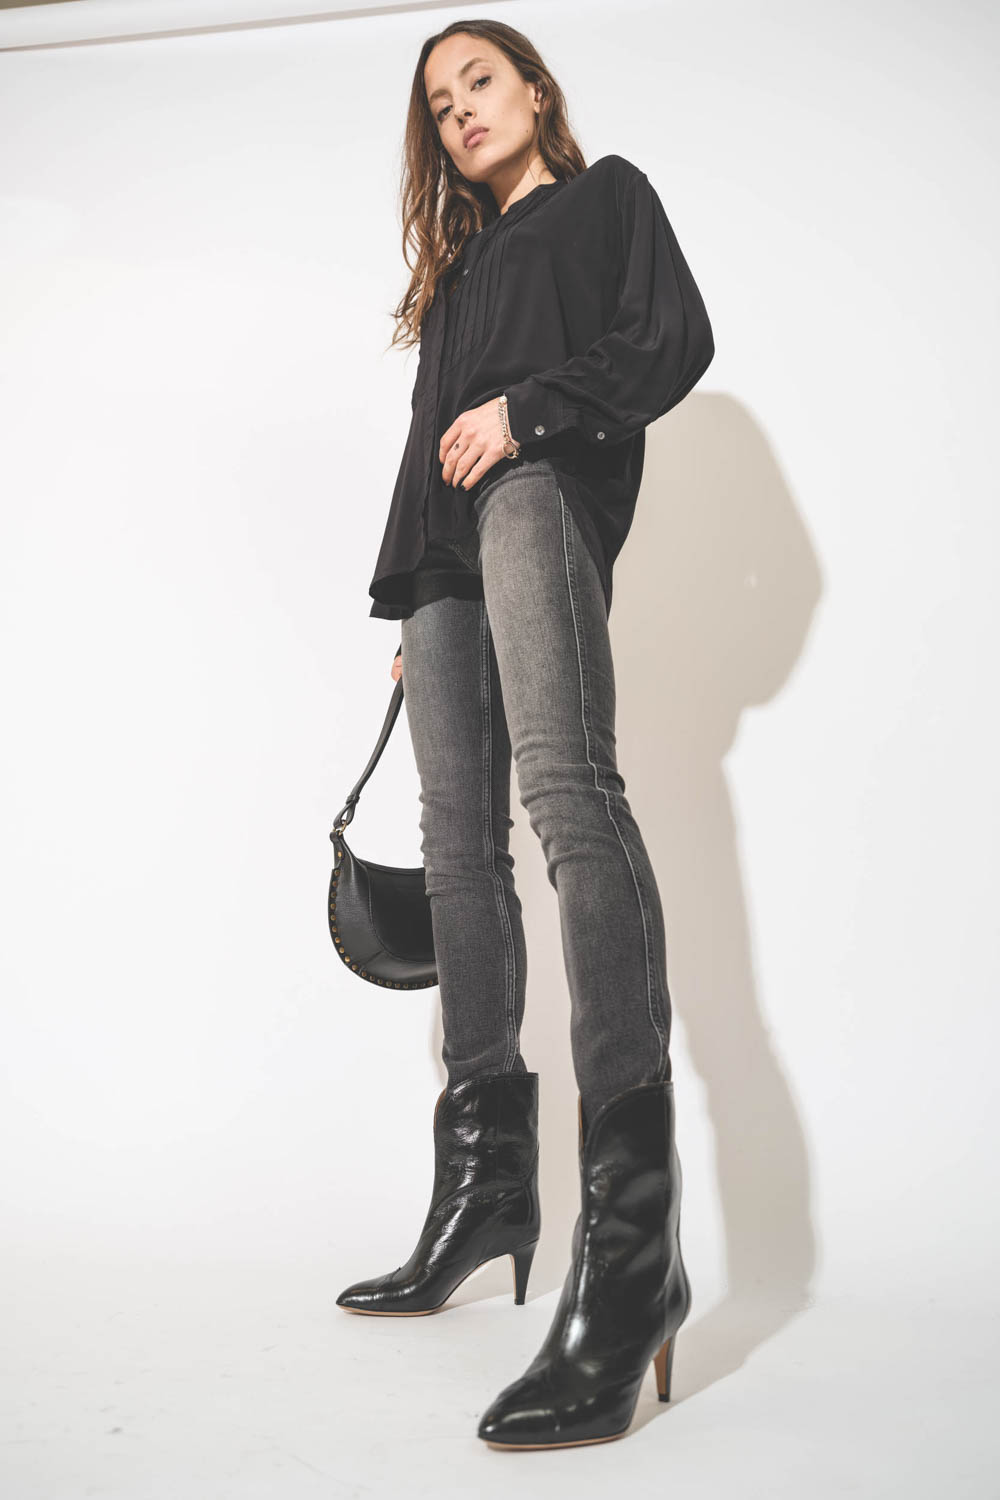 Chemise forme liquette manches longues en viscose noir Amel Isabel Marant Etoile. Porté avec un jean Slim et des boots à talons en cuir glacé noir.